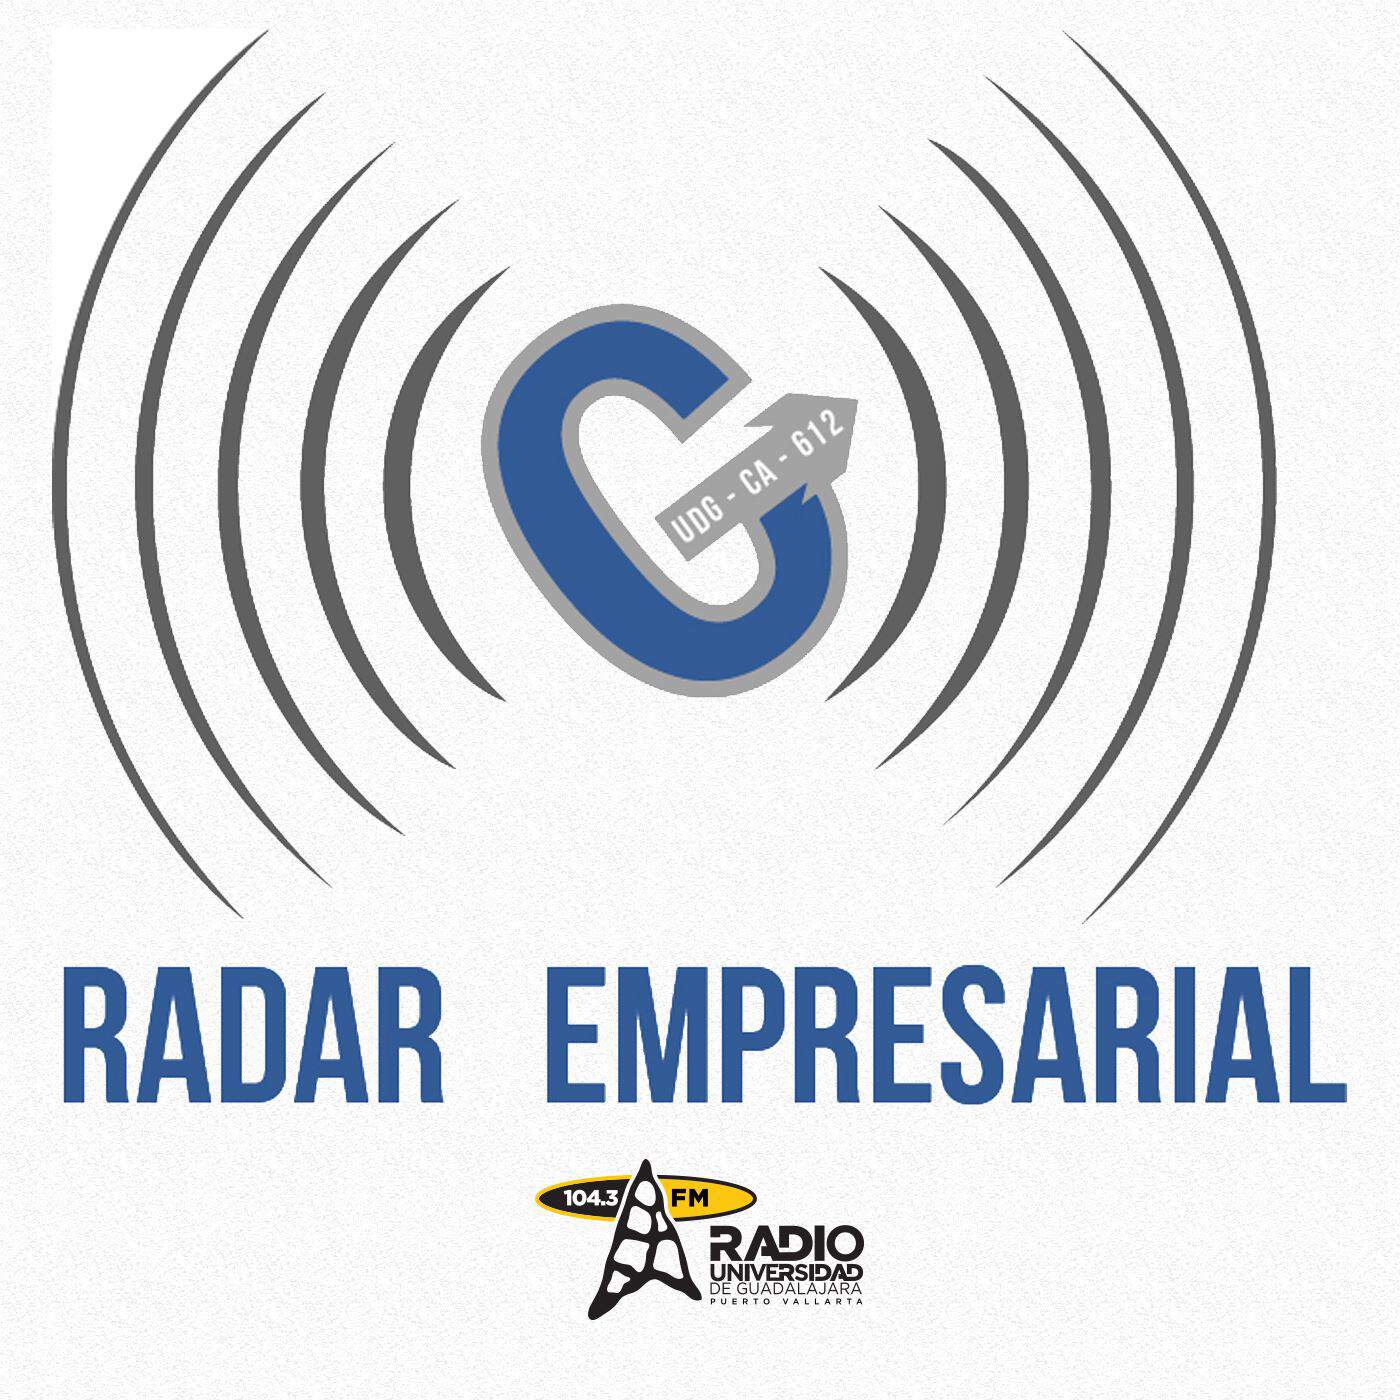 radarempresarial